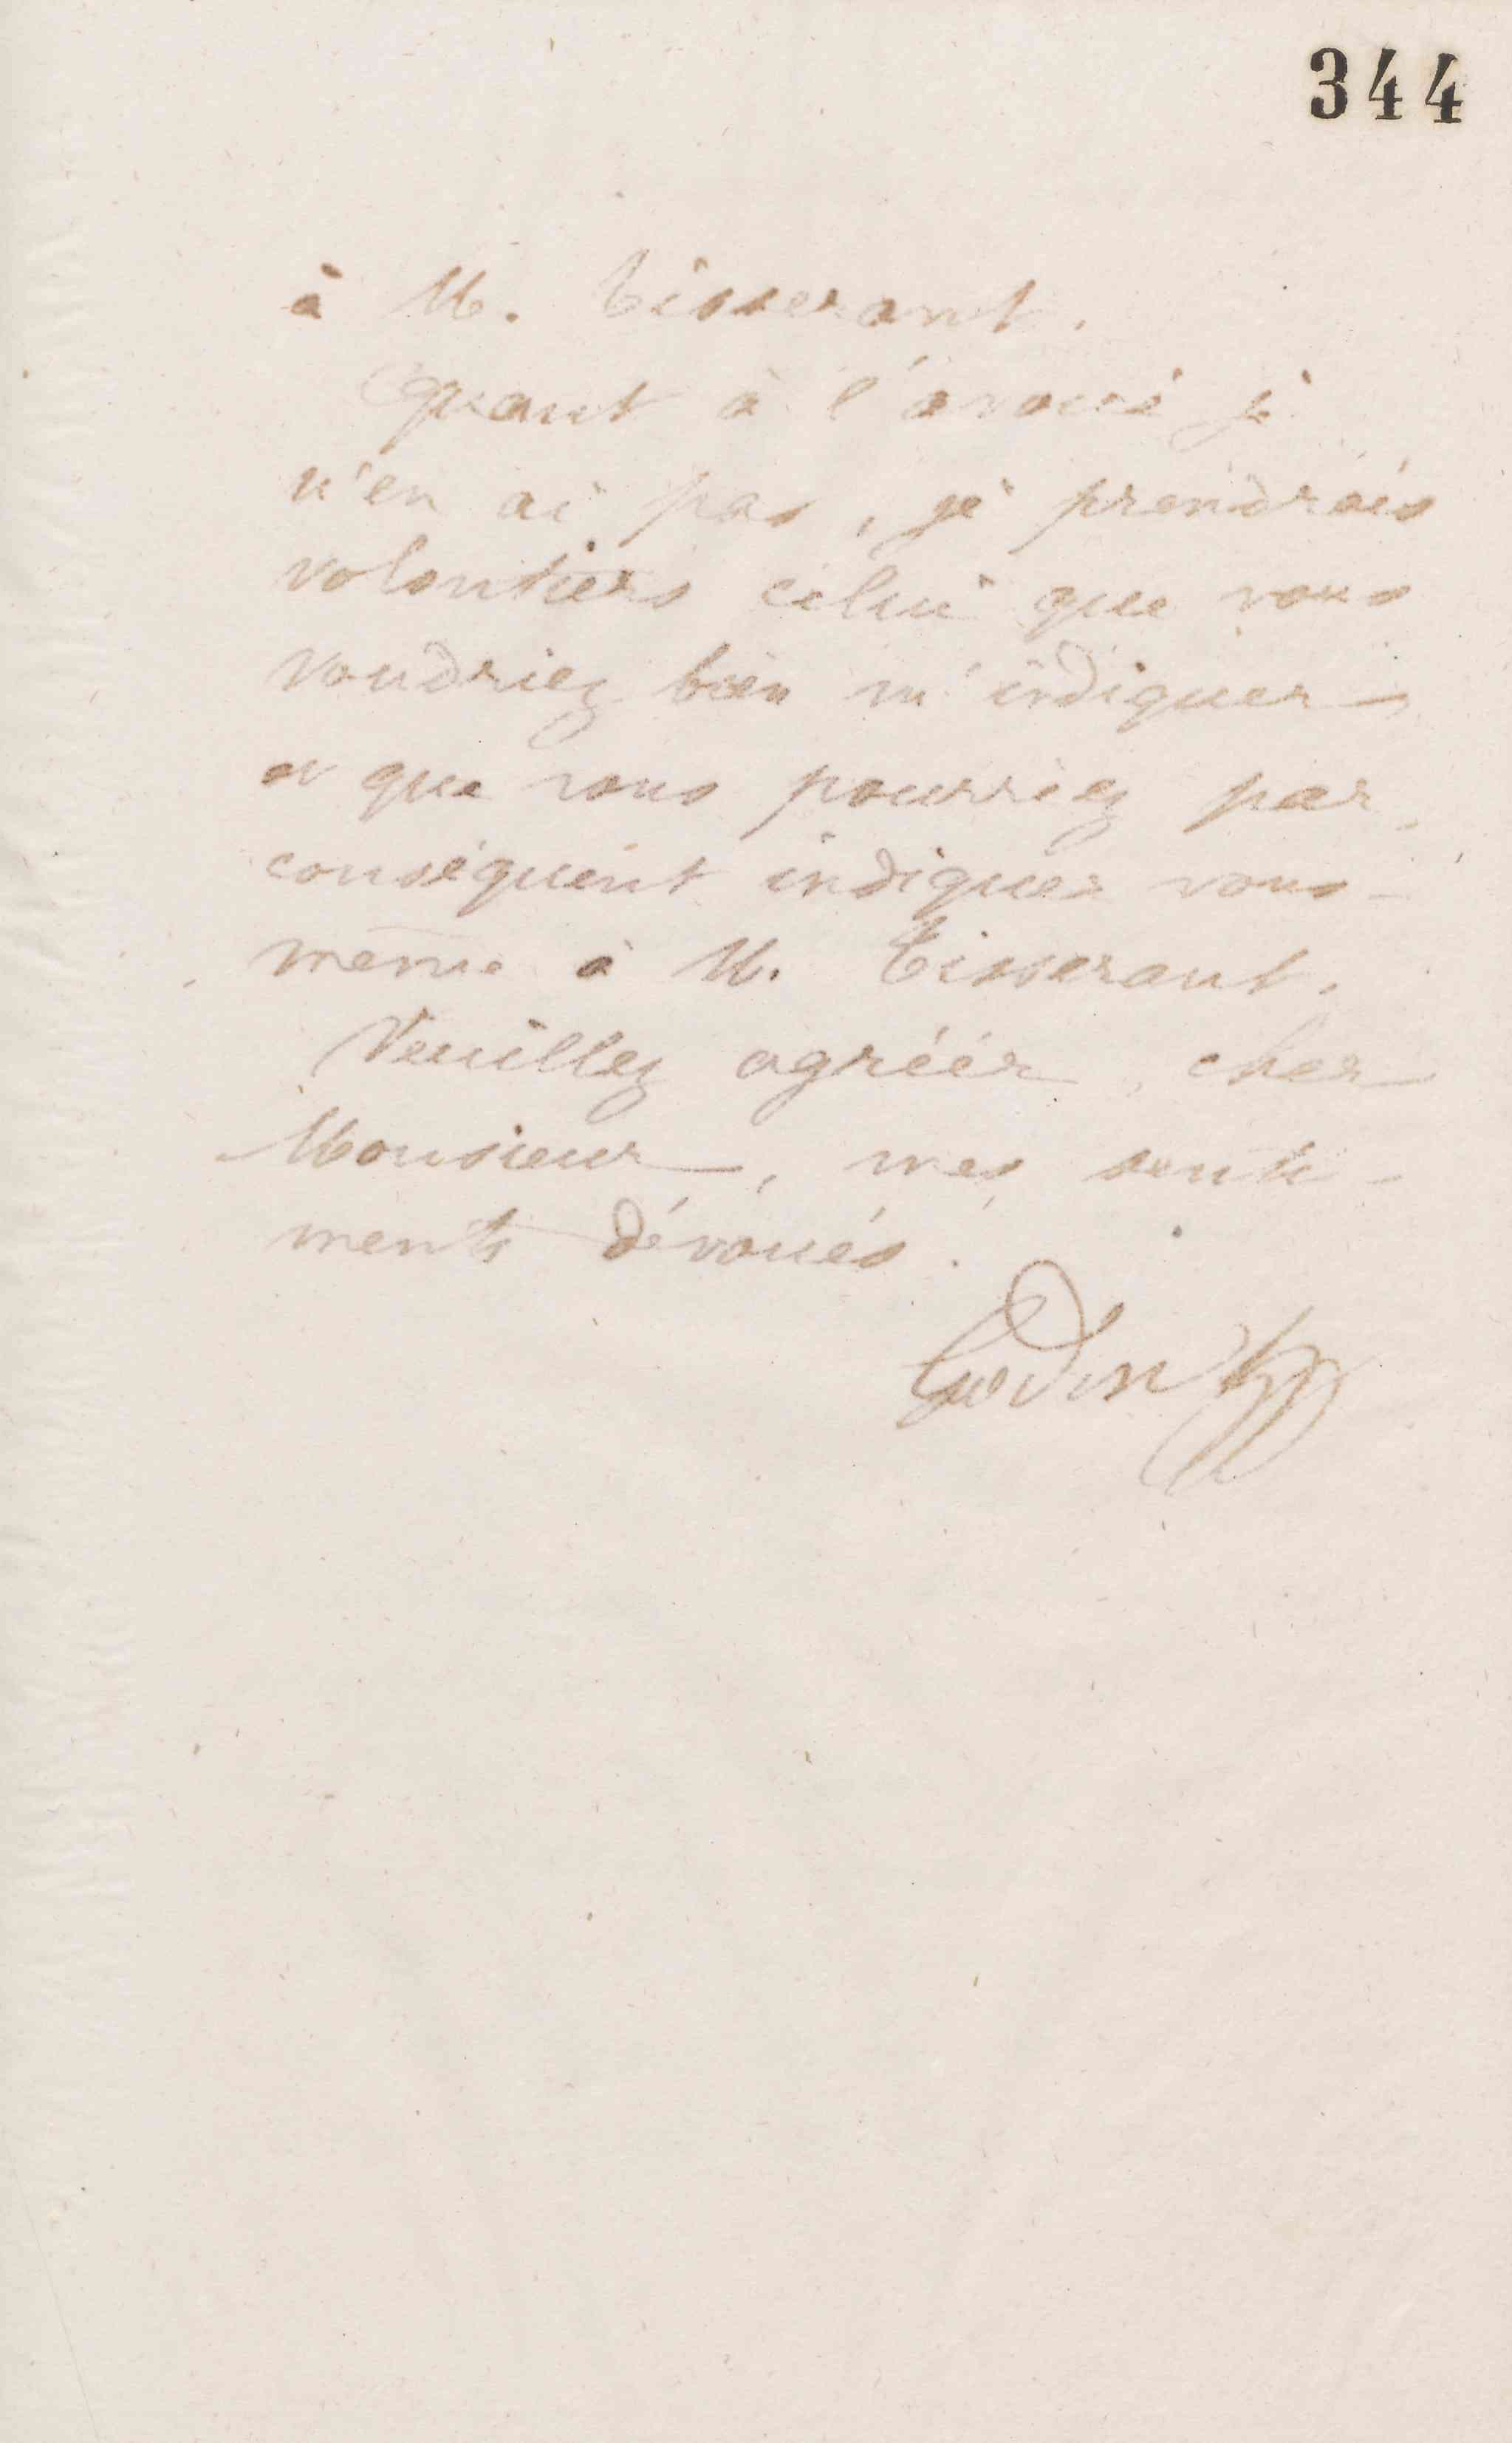 Jean-Baptiste André Godin à Guillaume Ernest Cresson, 1er juillet 1873